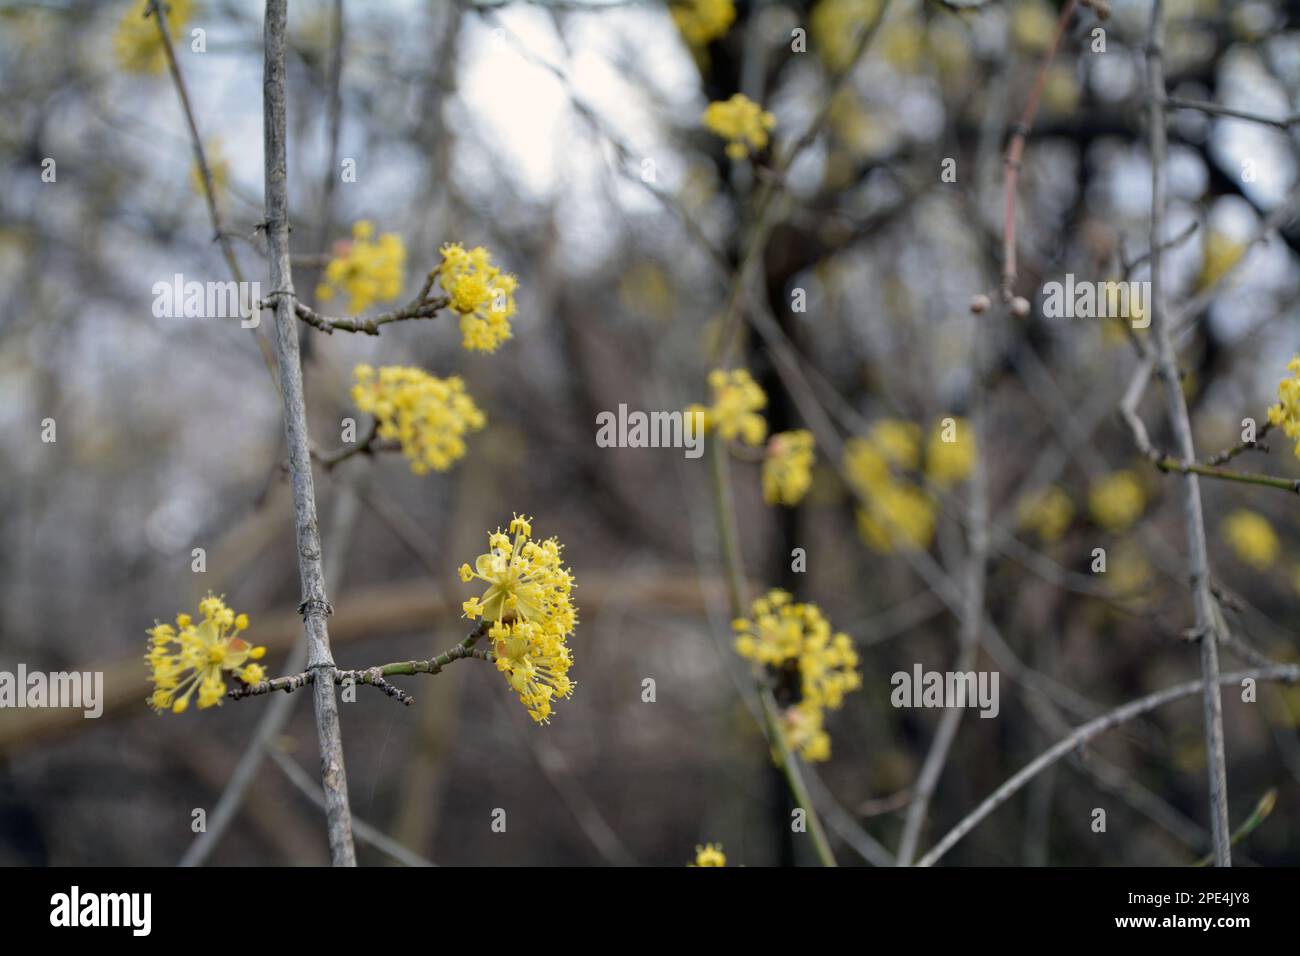 Un primo piano dei rami su un albero in fiore (Lindera obtusiloba) con fiori gialli in primavera. Immagine orizzontale con messa a fuoco selettiva Foto Stock